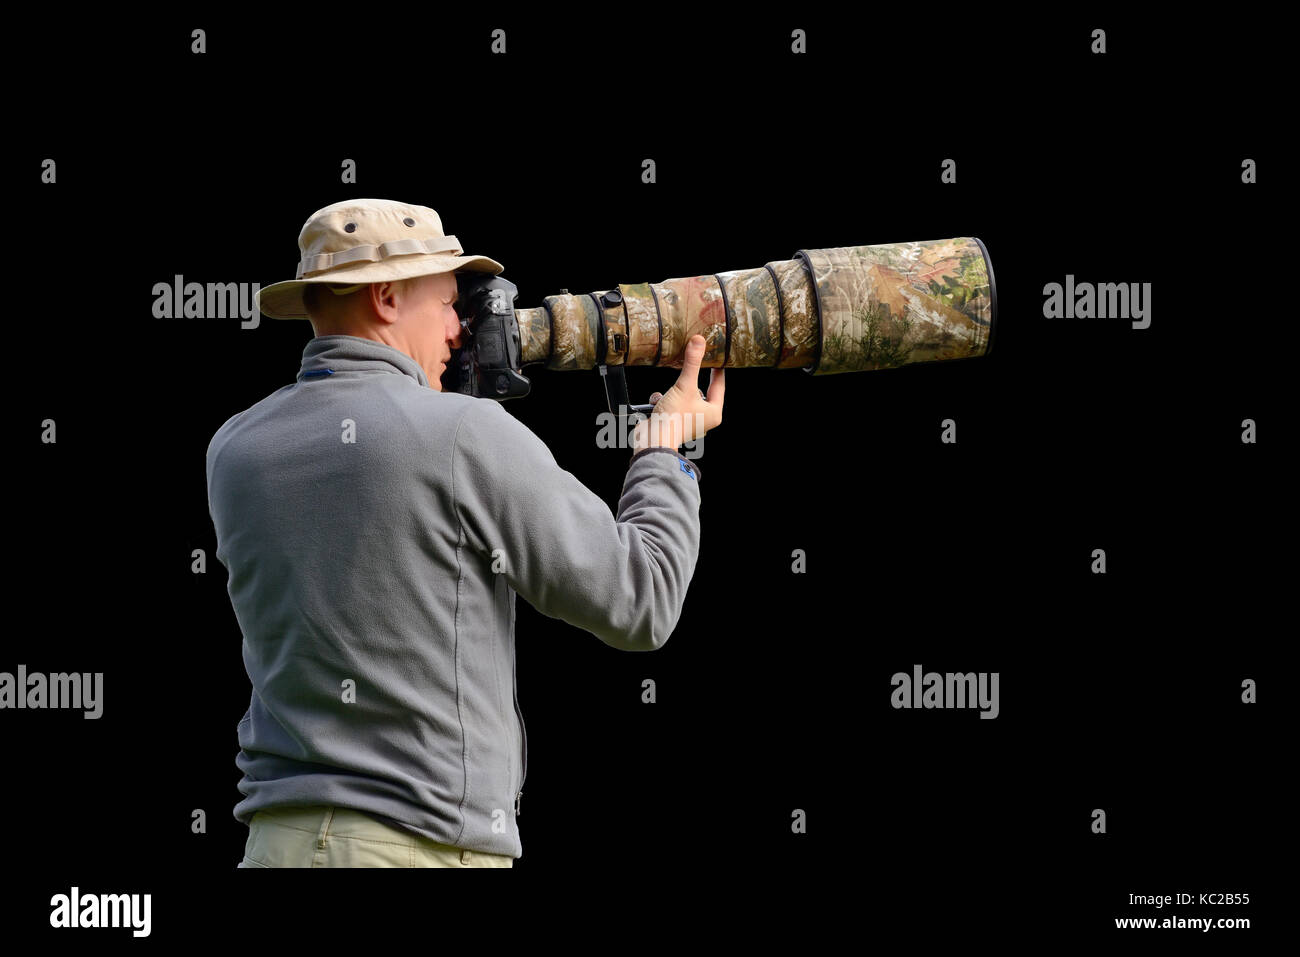 Professional wildlife photographer isolated on black background Stock Photo